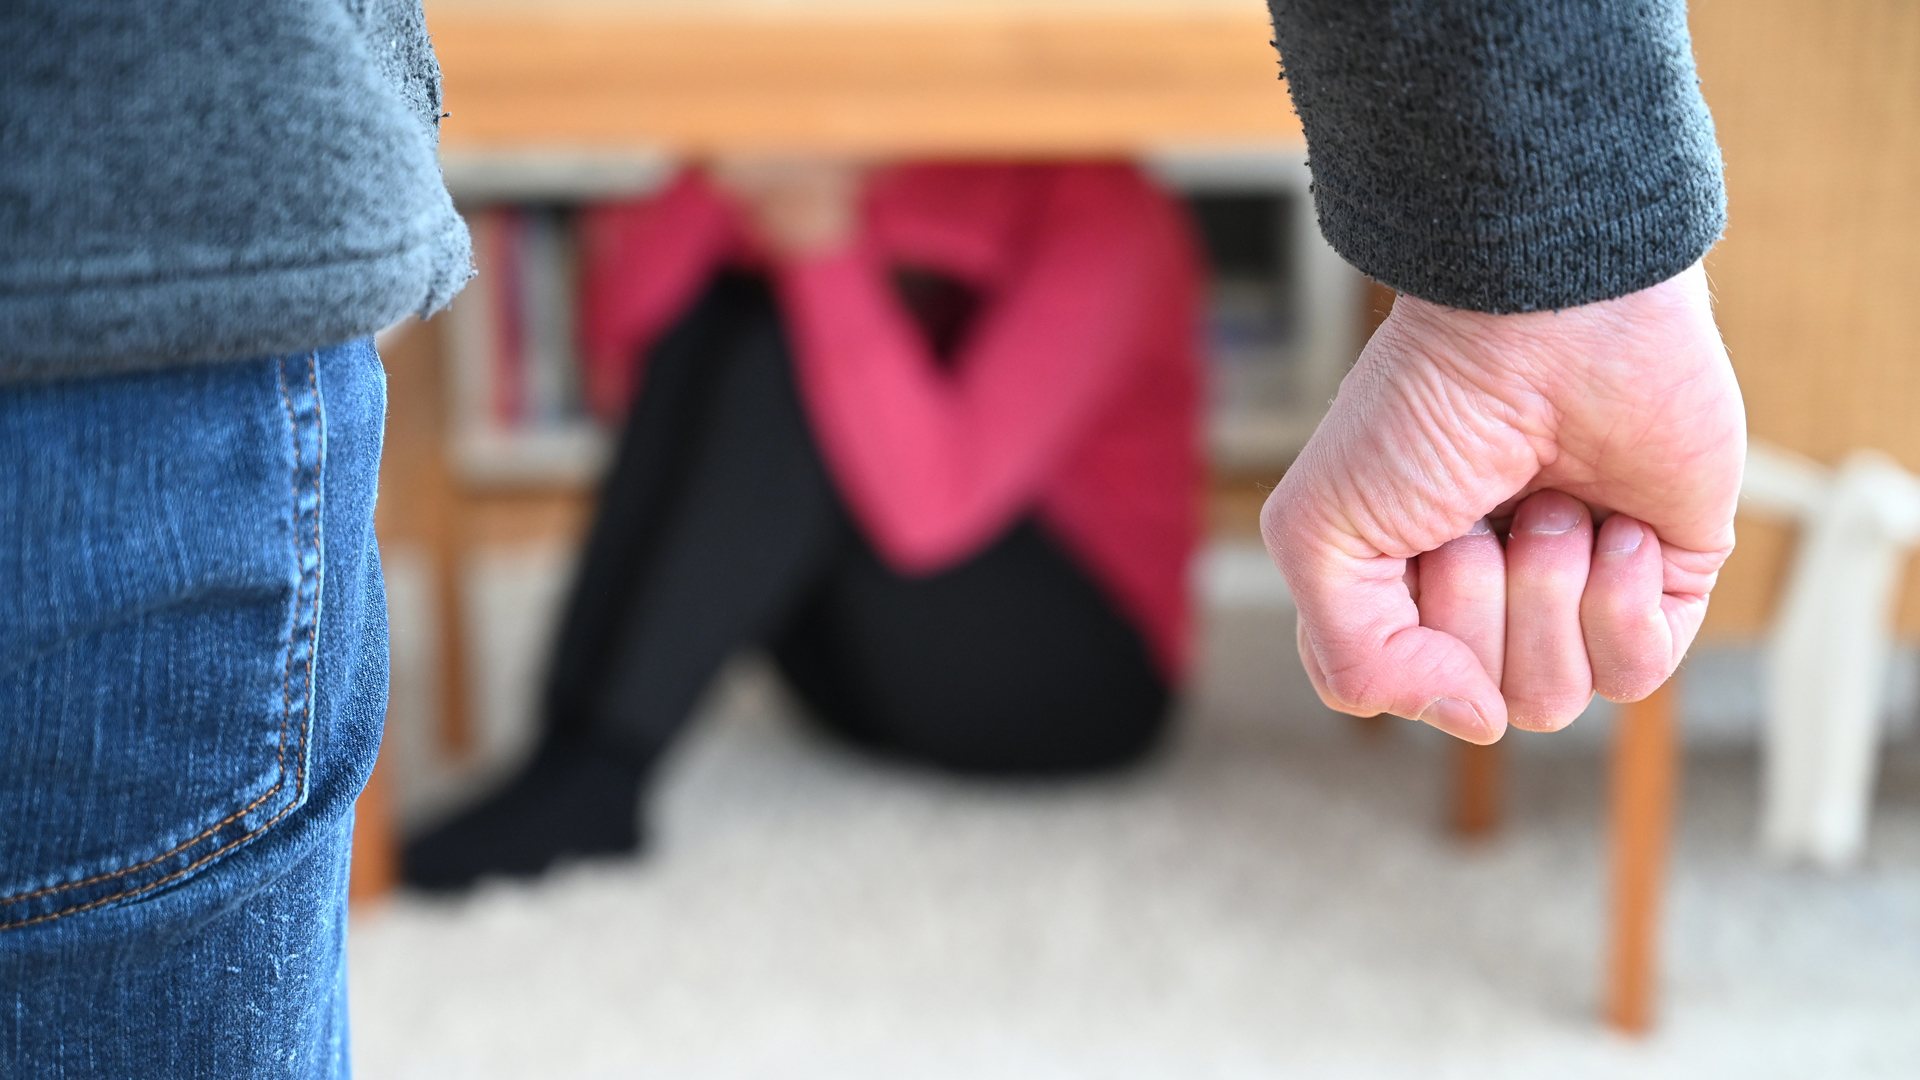 Gestellte Szene zur häuslichen Gewalt: Mann ballt eine Faust, eine Frau sitzt im Hintergrund Schutz suchend unter einem Tisch.